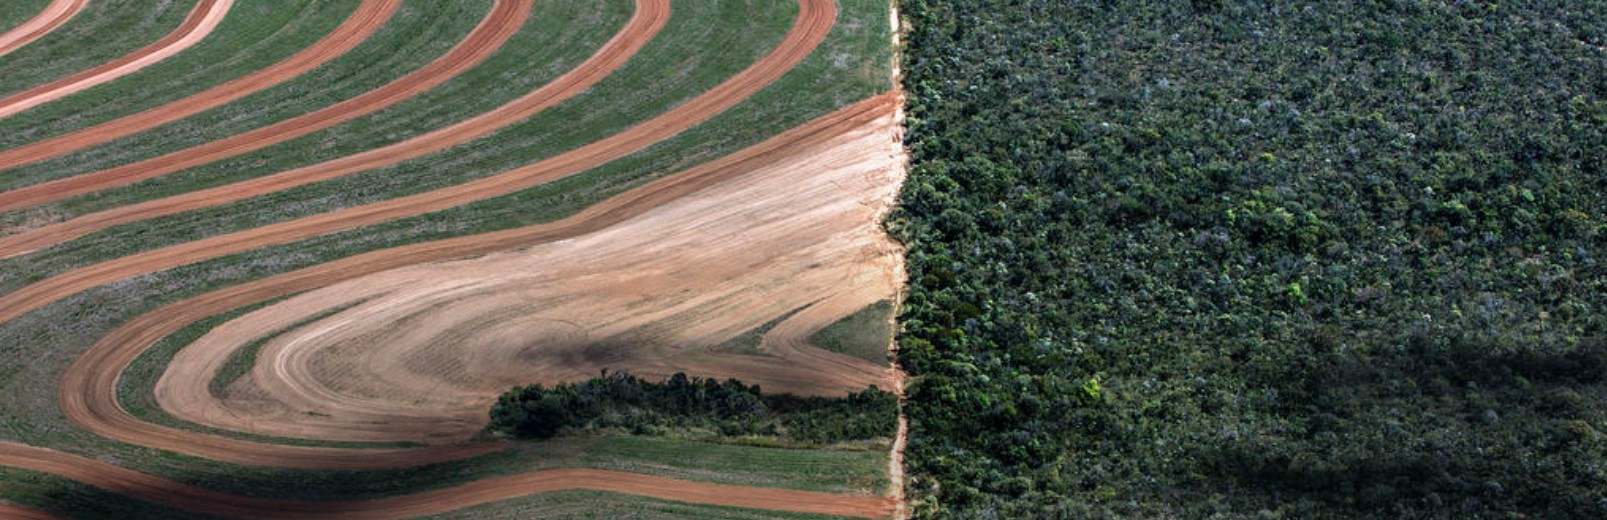 Lidl und McDonalds – stehen wegen Entwaldung in Brasilien in Kritik – How your chicken is linked to deforestation in Brazil 